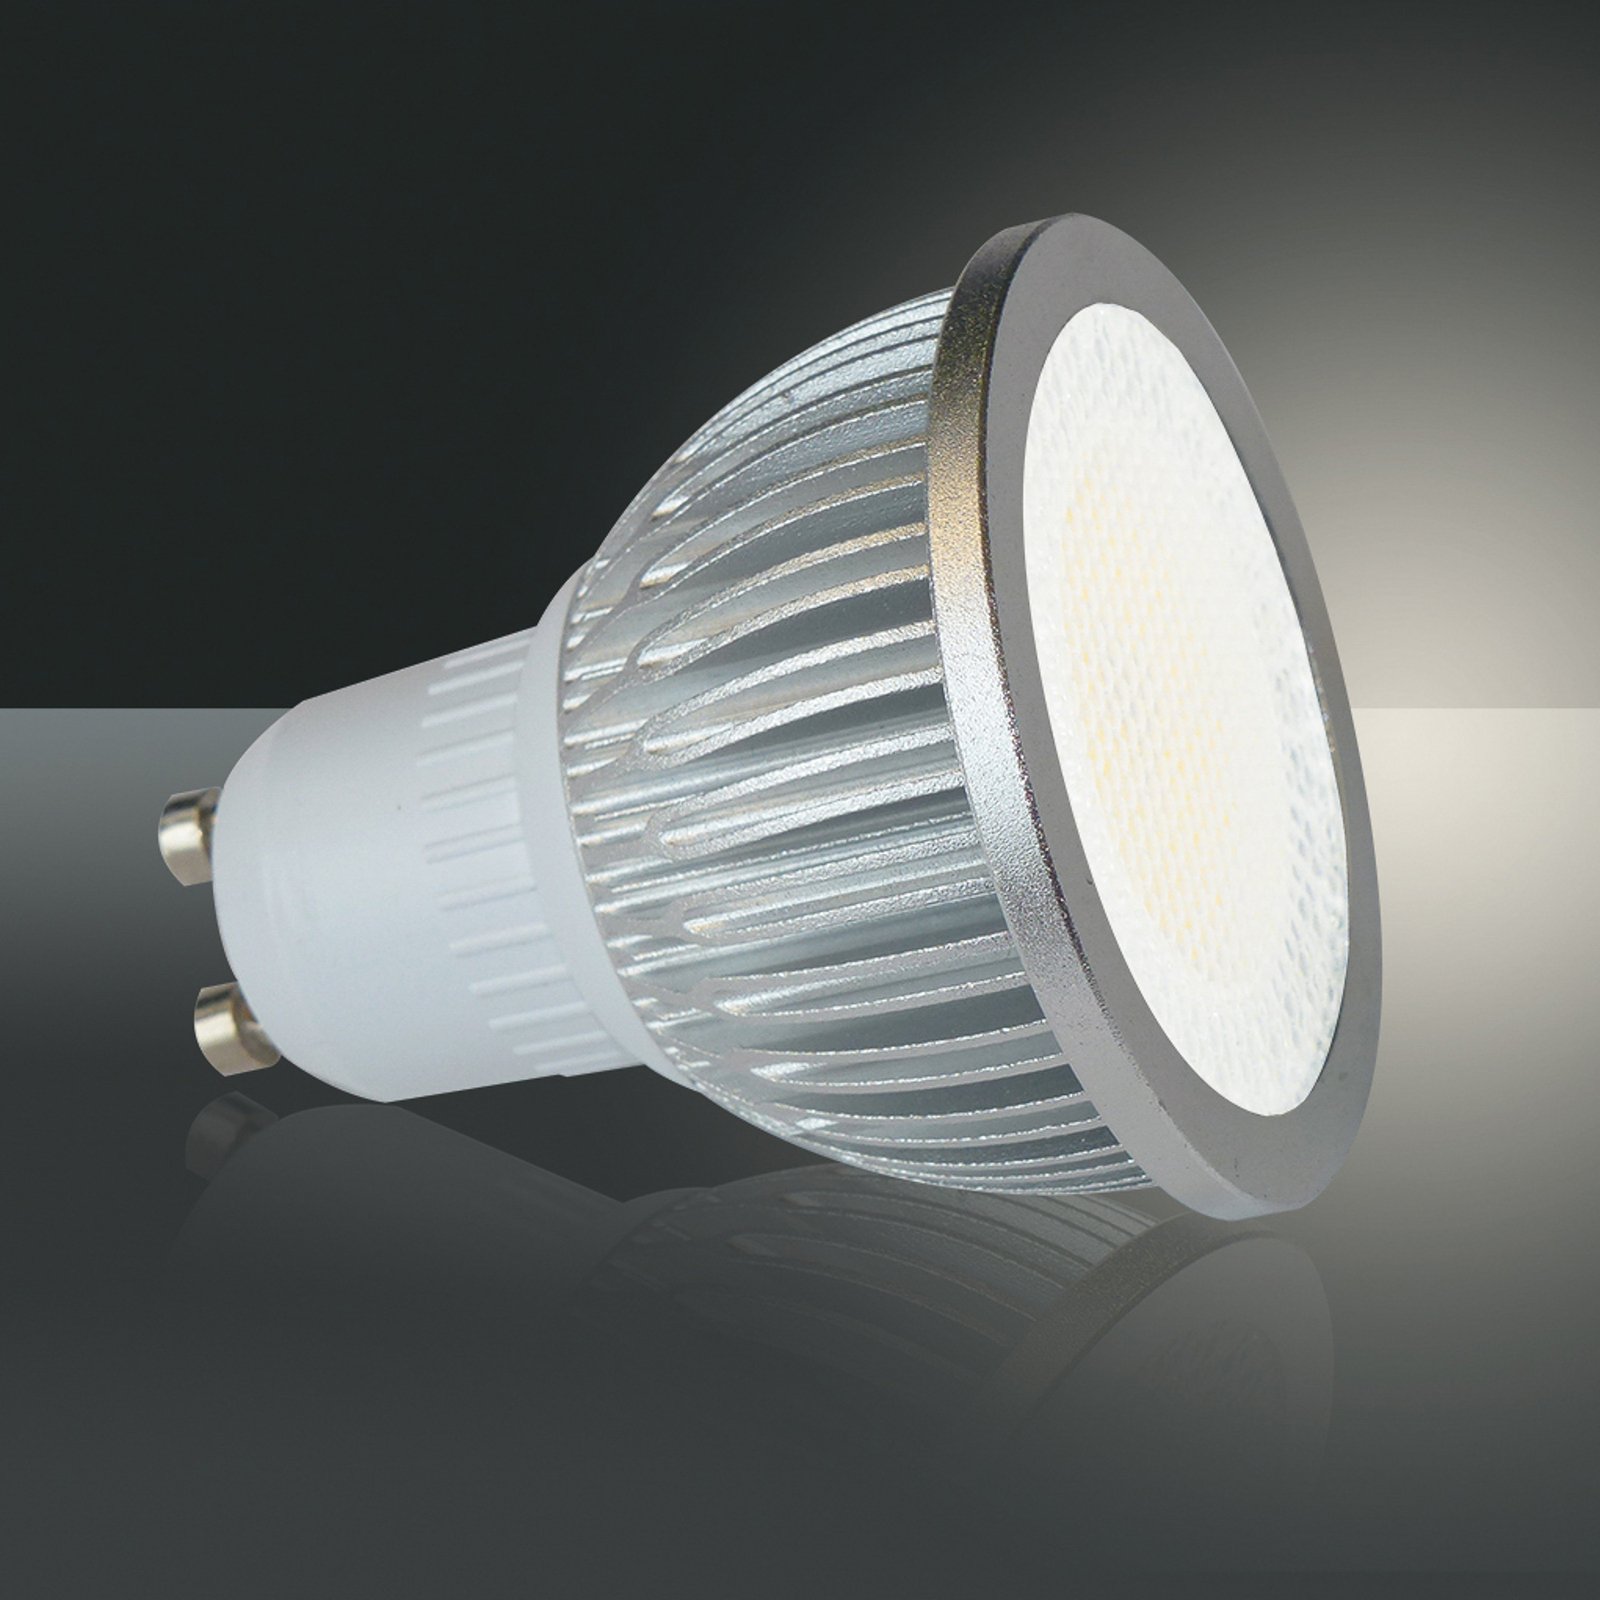 Hoogspanning LED reflector GU10 5W 830 85° 6/set